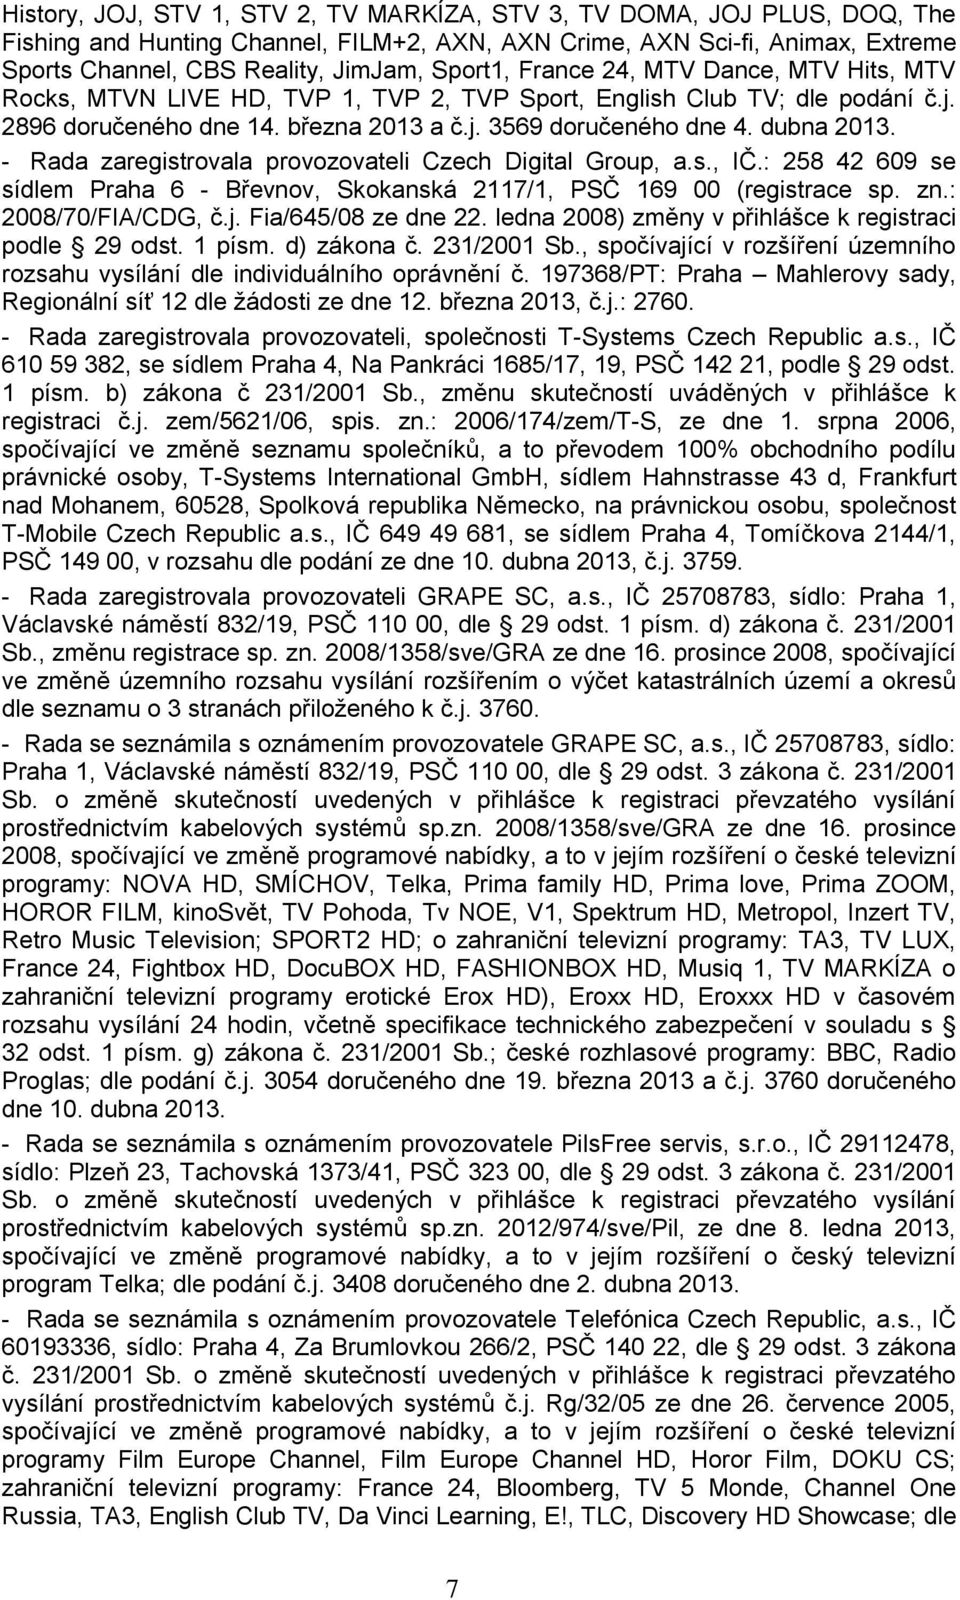 - Rada zaregistrovala provozovateli Czech Digital Group, a.s., IČ.: 258 42 609 se sídlem Praha 6 - Břevnov, Skokanská 2117/1, PSČ 169 00 (registrace sp. zn.: 2008/70/FIA/CDG, č.j.